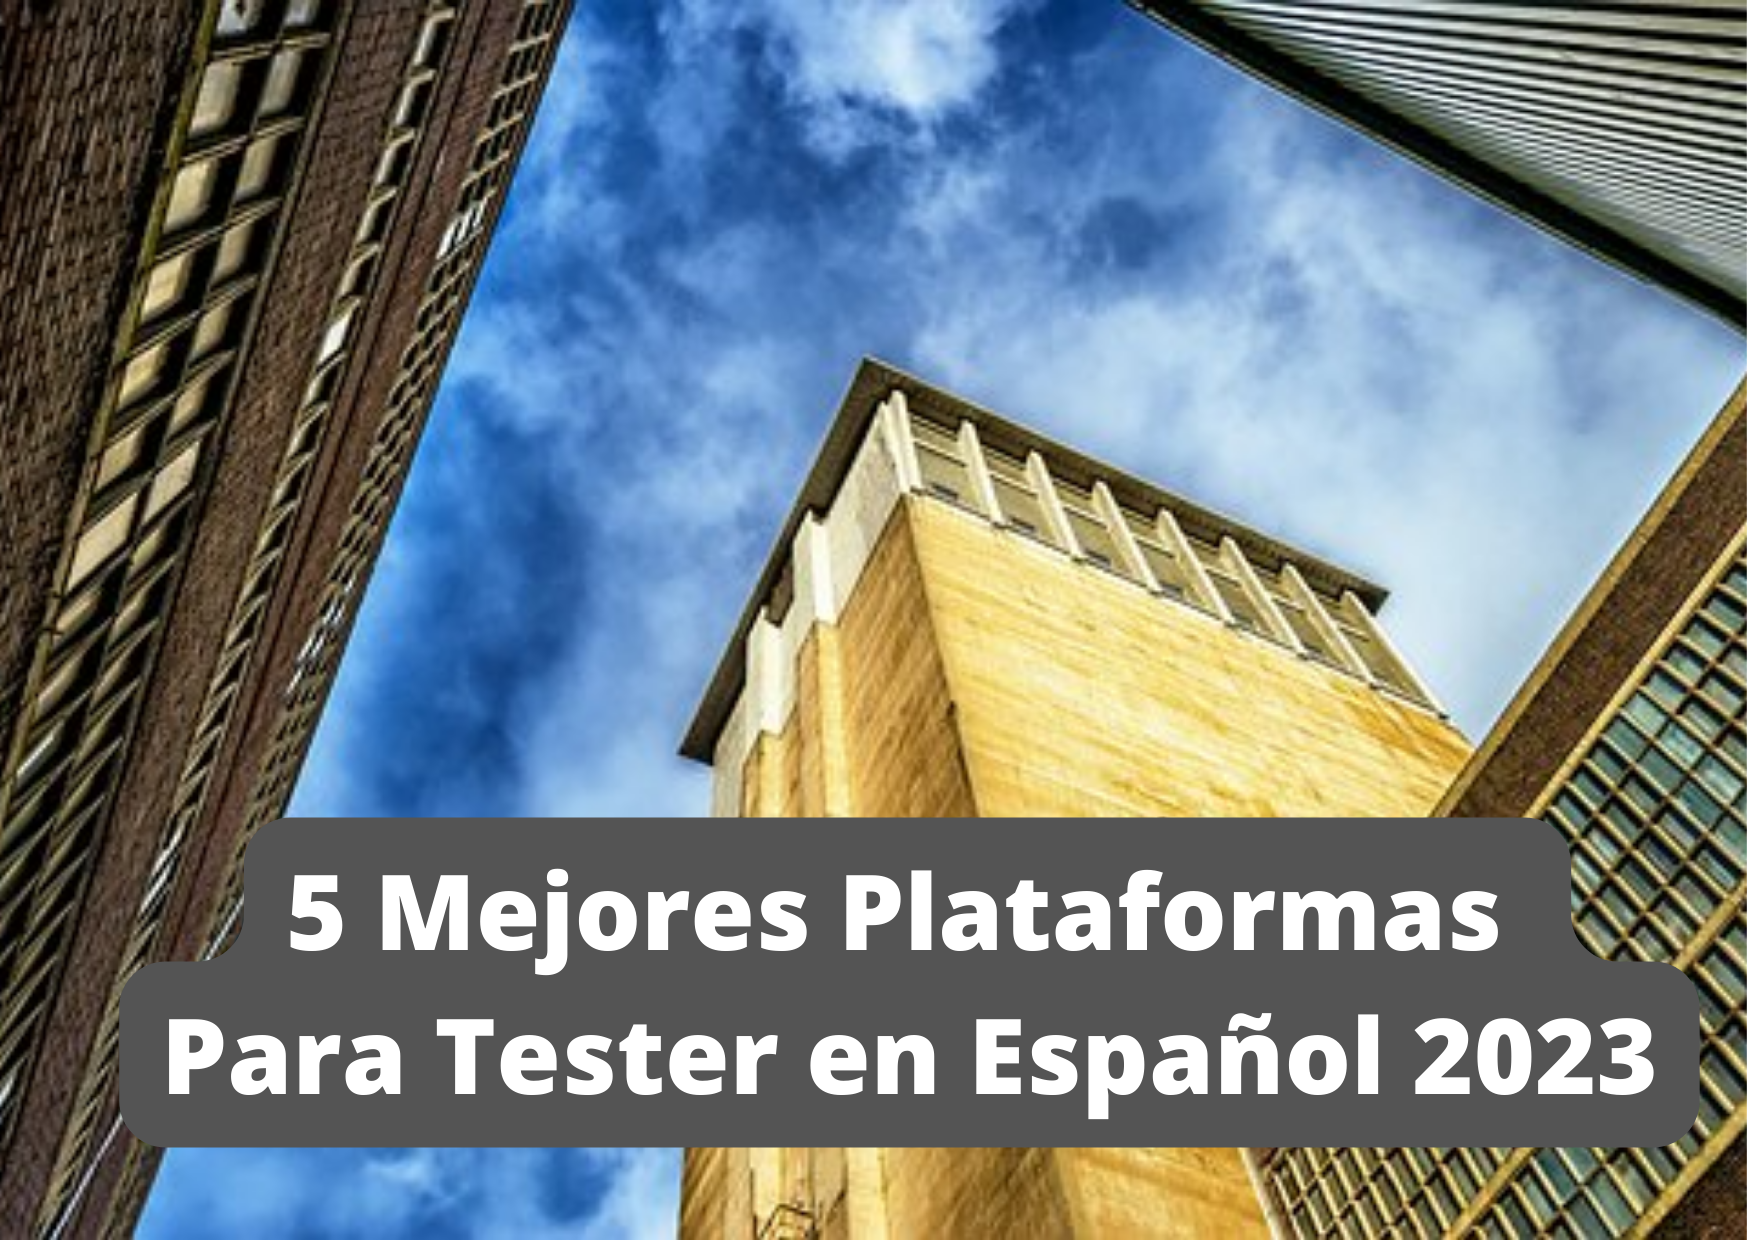 5 Mejores Plataformas Para Tester en Español 2023